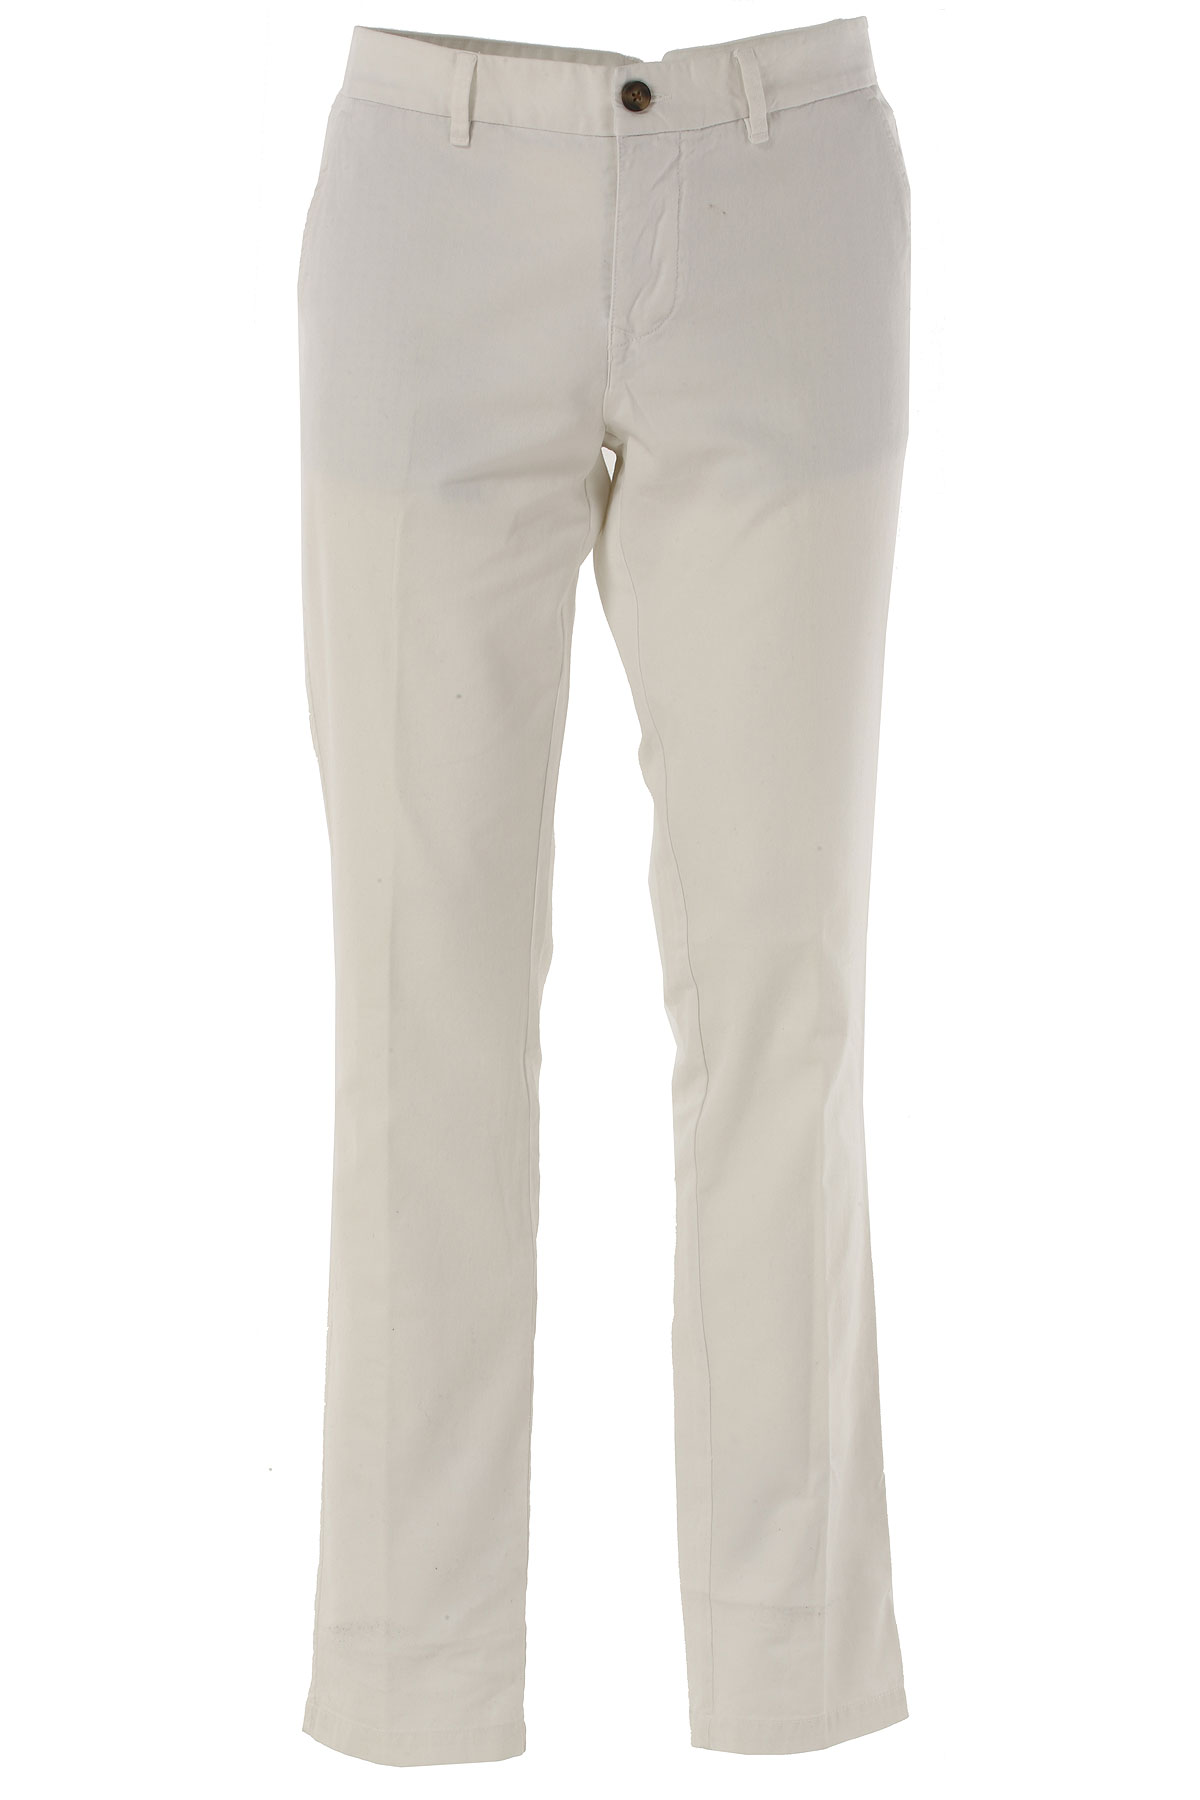 Blauer Pantalon Homme Outlet, Blanc, Coton, 2017, 48 49 52